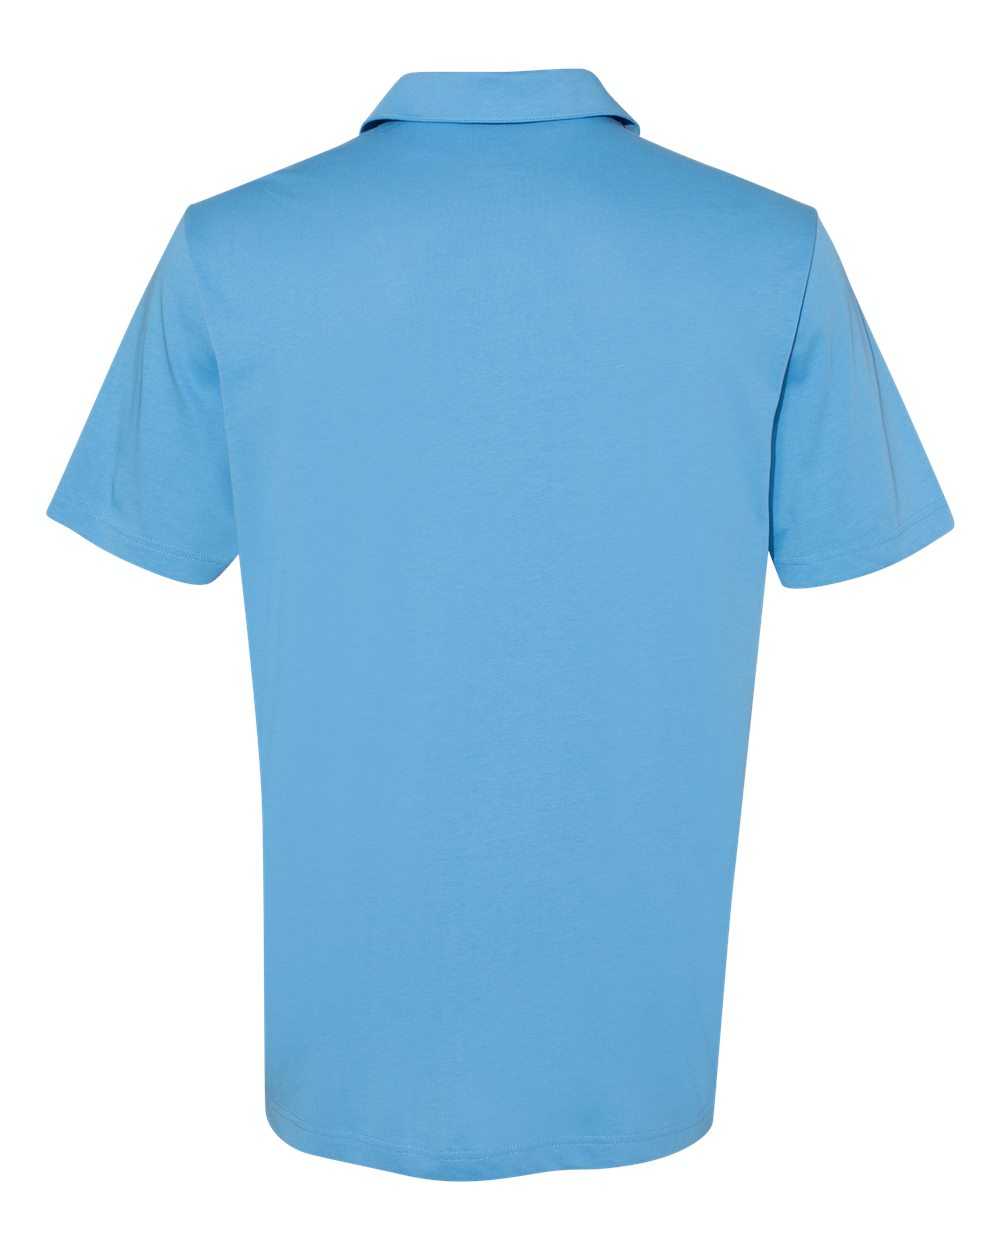 Adidas A322 Cotton Blend Sport Shirt - Light Blue - HIT a Double